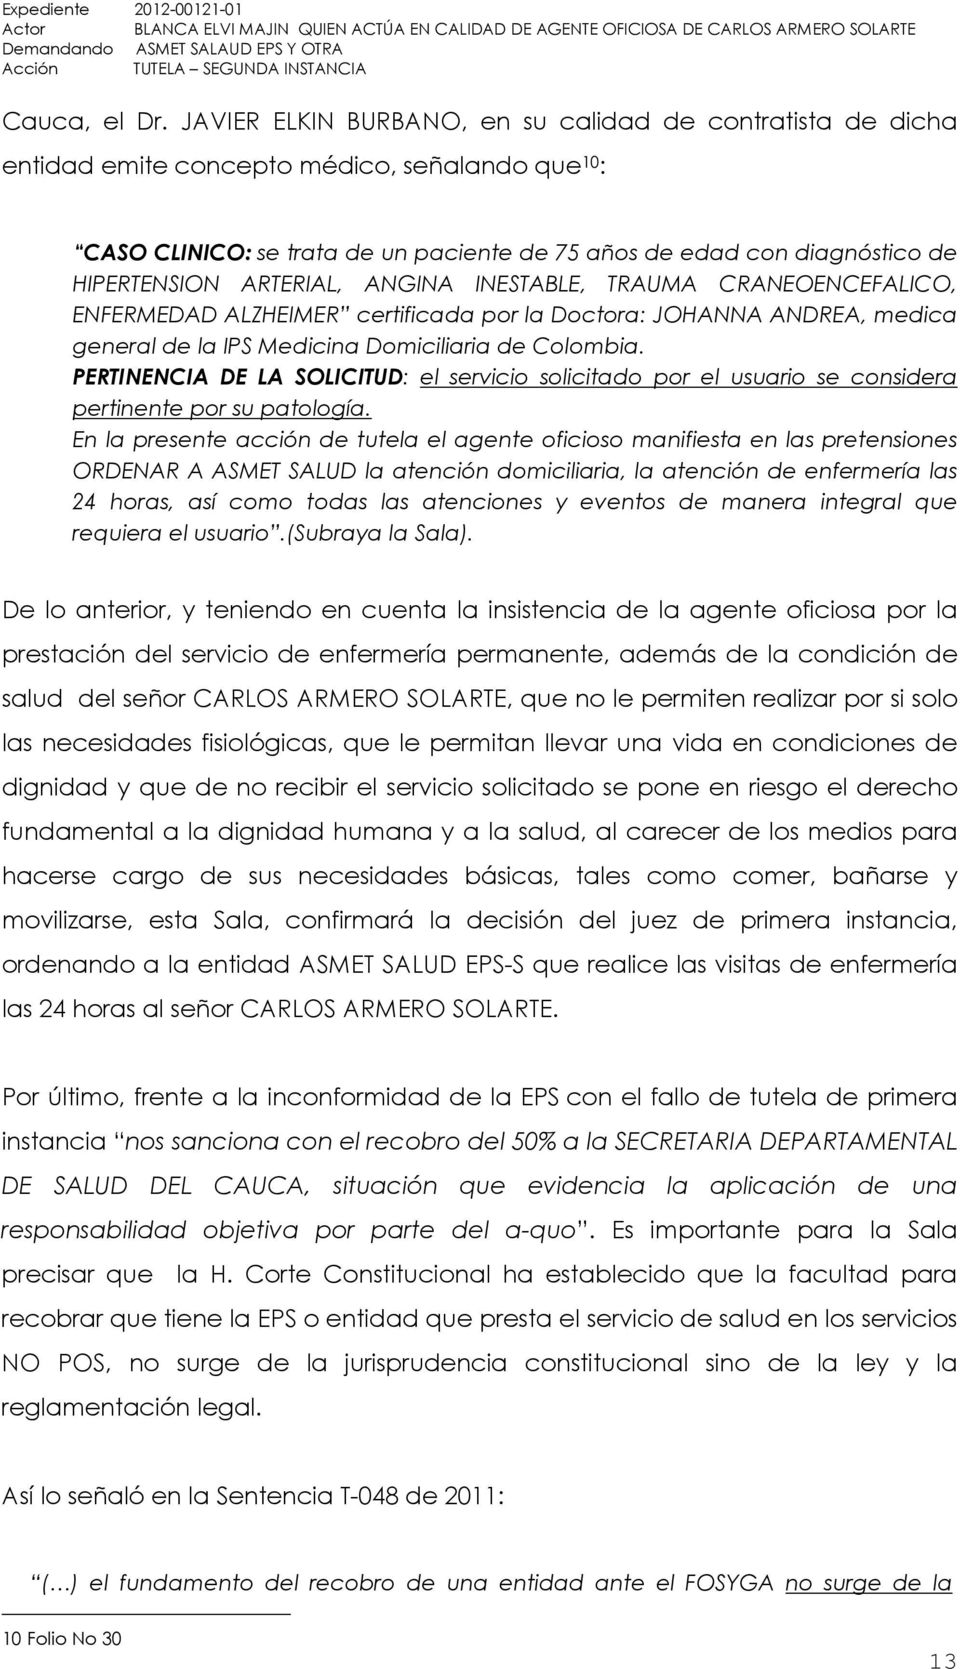 ARTERIAL, ANGINA INESTABLE, TRAUMA CRANEOENCEFALICO, ENFERMEDAD ALZHEIMER certificada por la Doctora: JOHANNA ANDREA, medica general de la IPS Medicina Domiciliaria de Colombia.